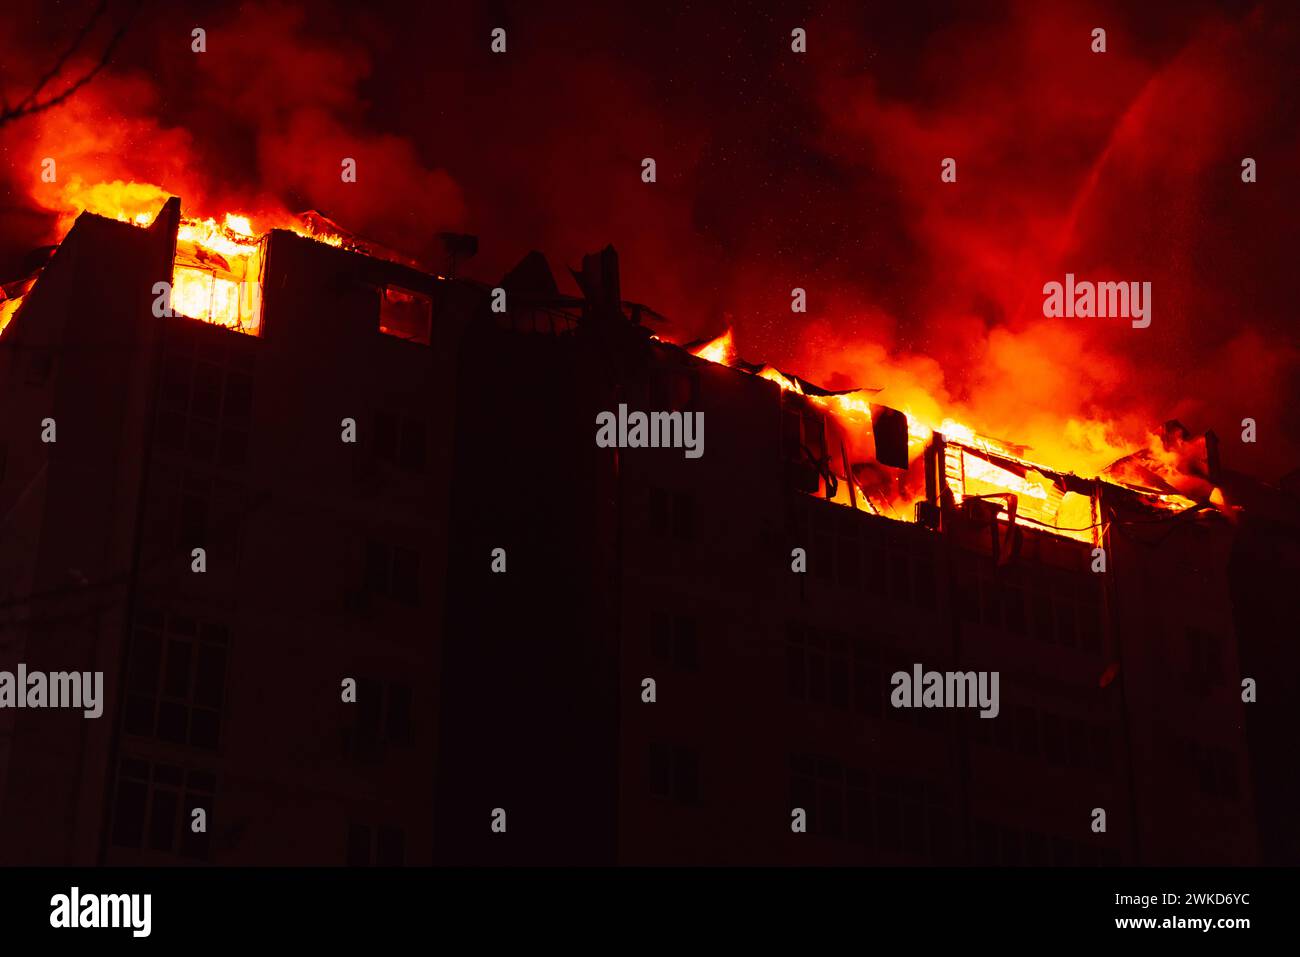 Ein riesiges Feuer brannte in einem mehrstöckigen Wohnhaus. Brennendes Haus ist nachts in Flammen verwickelt während der Katastrophe Stockfoto